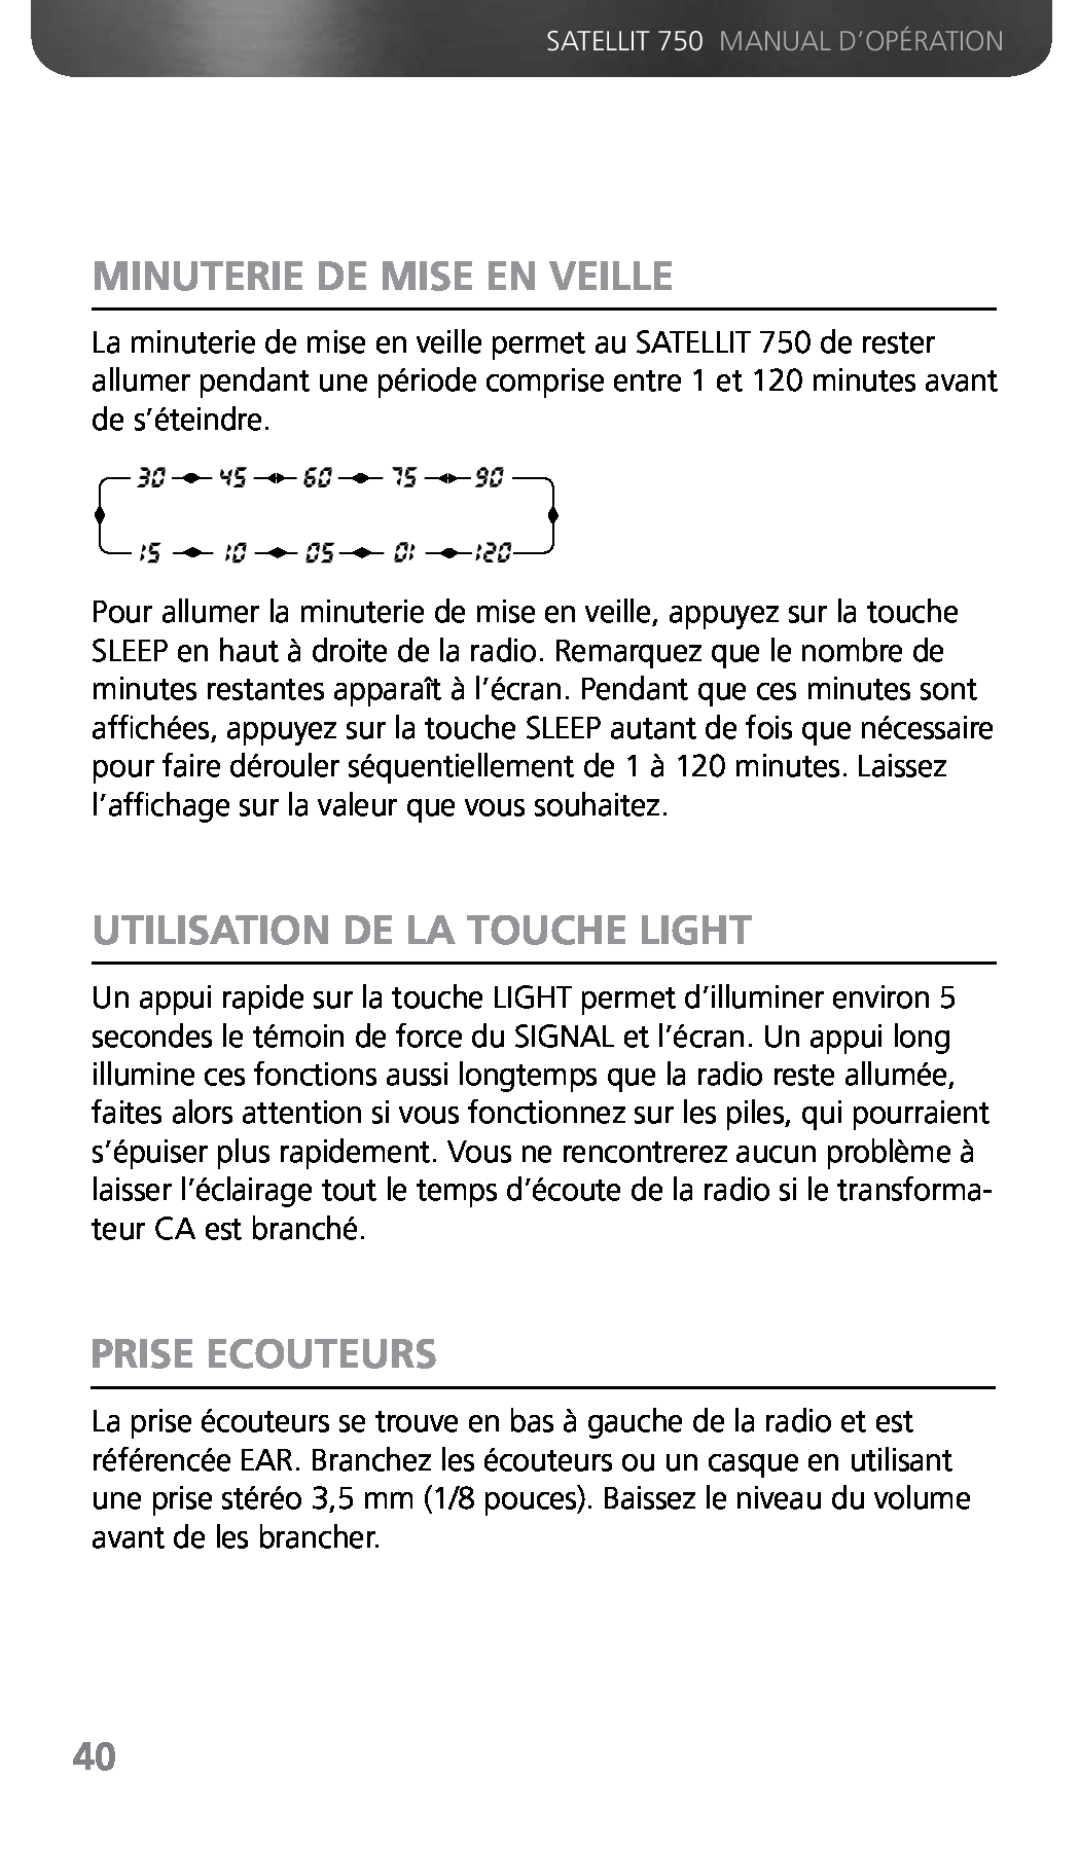 Grundig 750 owner manual Minuterie De Mise En Veille, Utilisation De La Touche Light, Prise Ecouteurs 